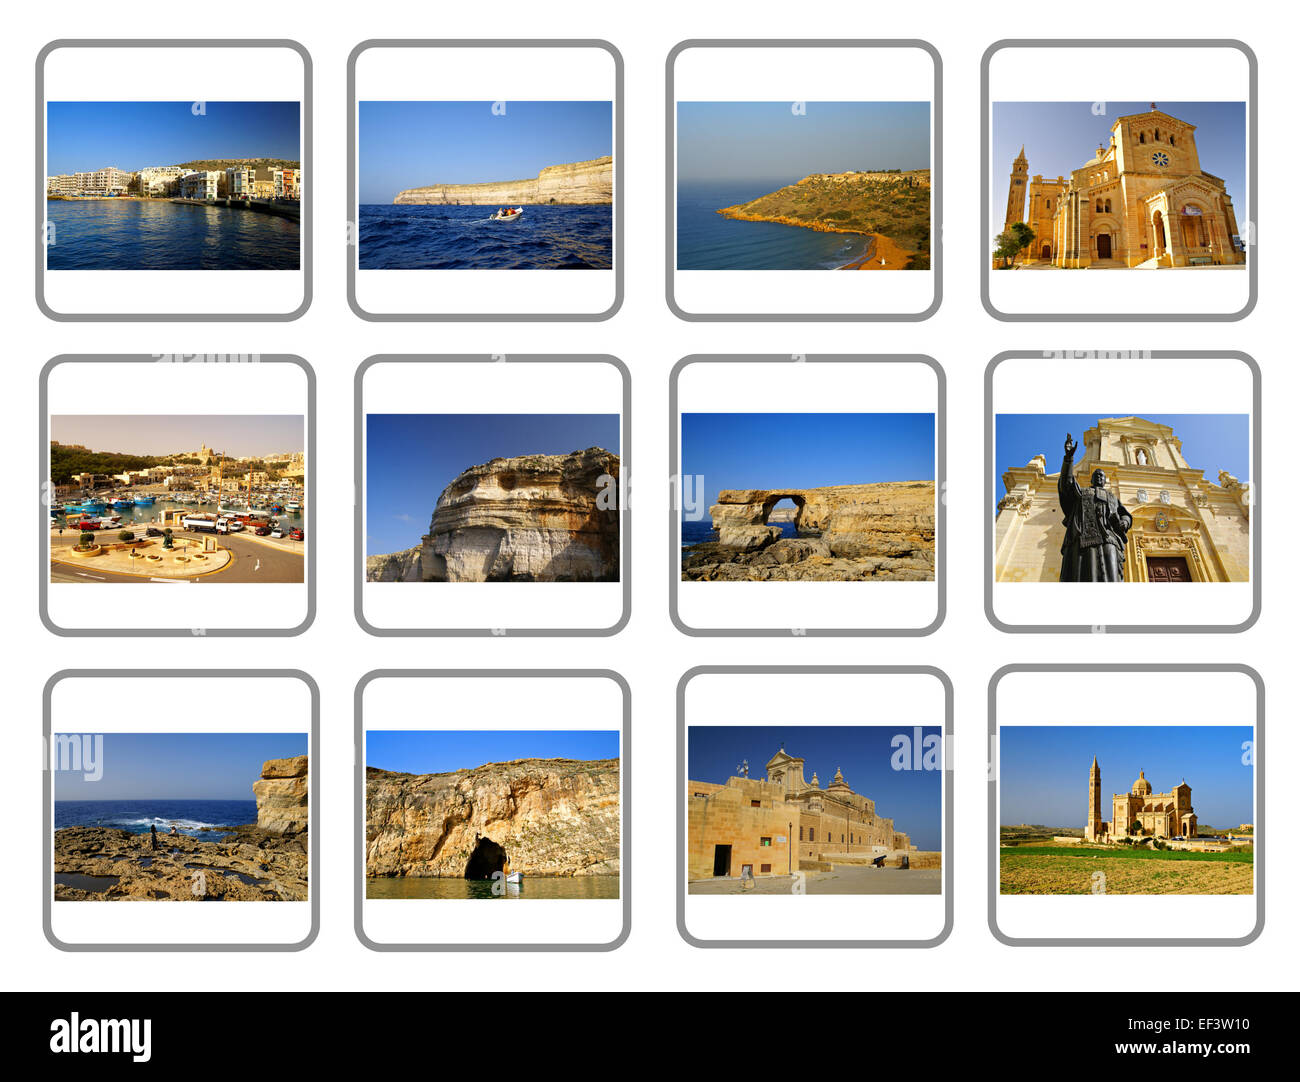 L'île de Gozo voyage Collage, l'une des îles maltaises Banque D'Images